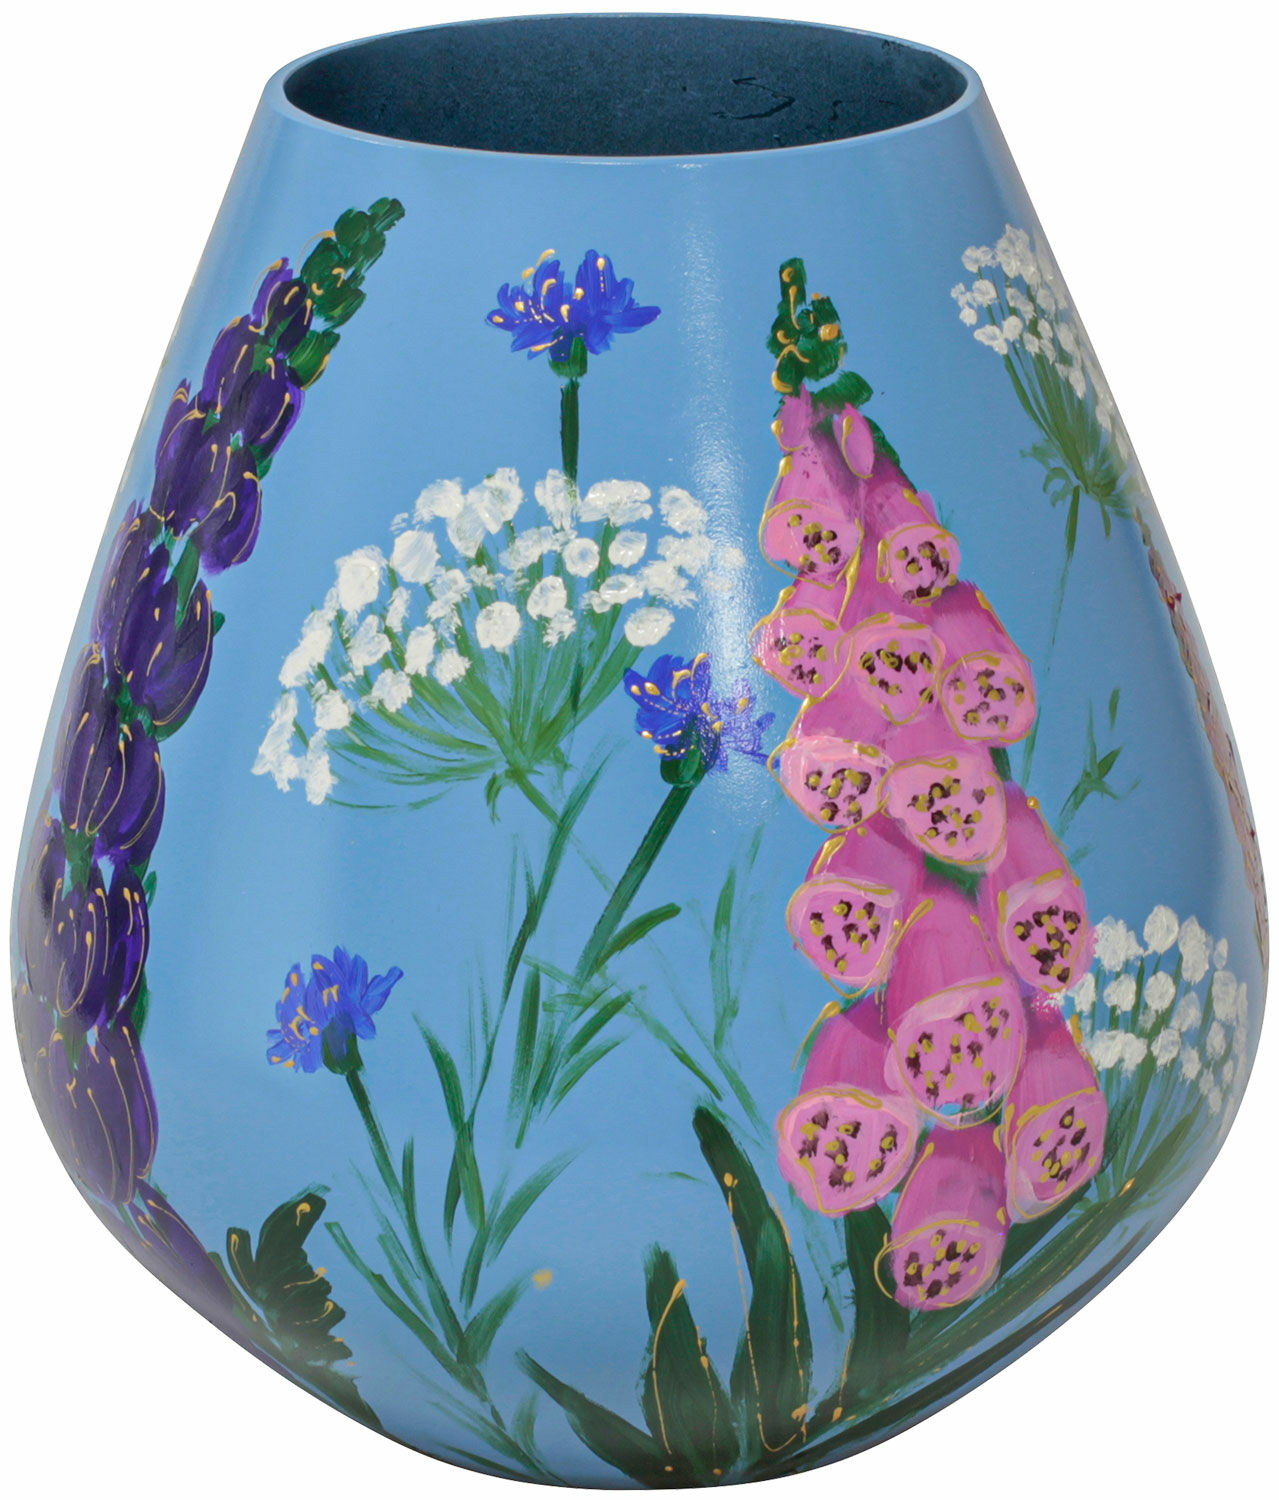 Vase en verre "Flower Meadow" von Milou van Schaik Martinet